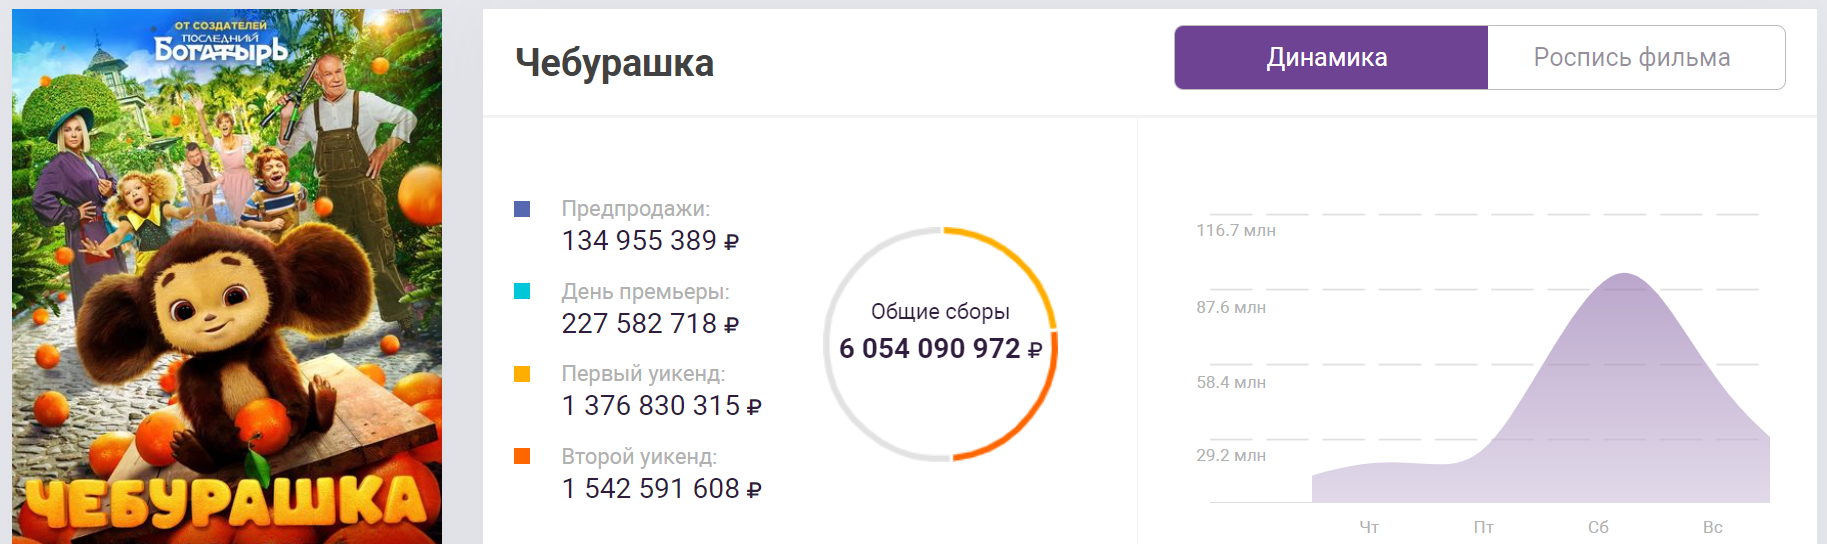 Спустя более месяца после премьеры «Чебурашка» собрал в прокате более шести миллиардов рублей